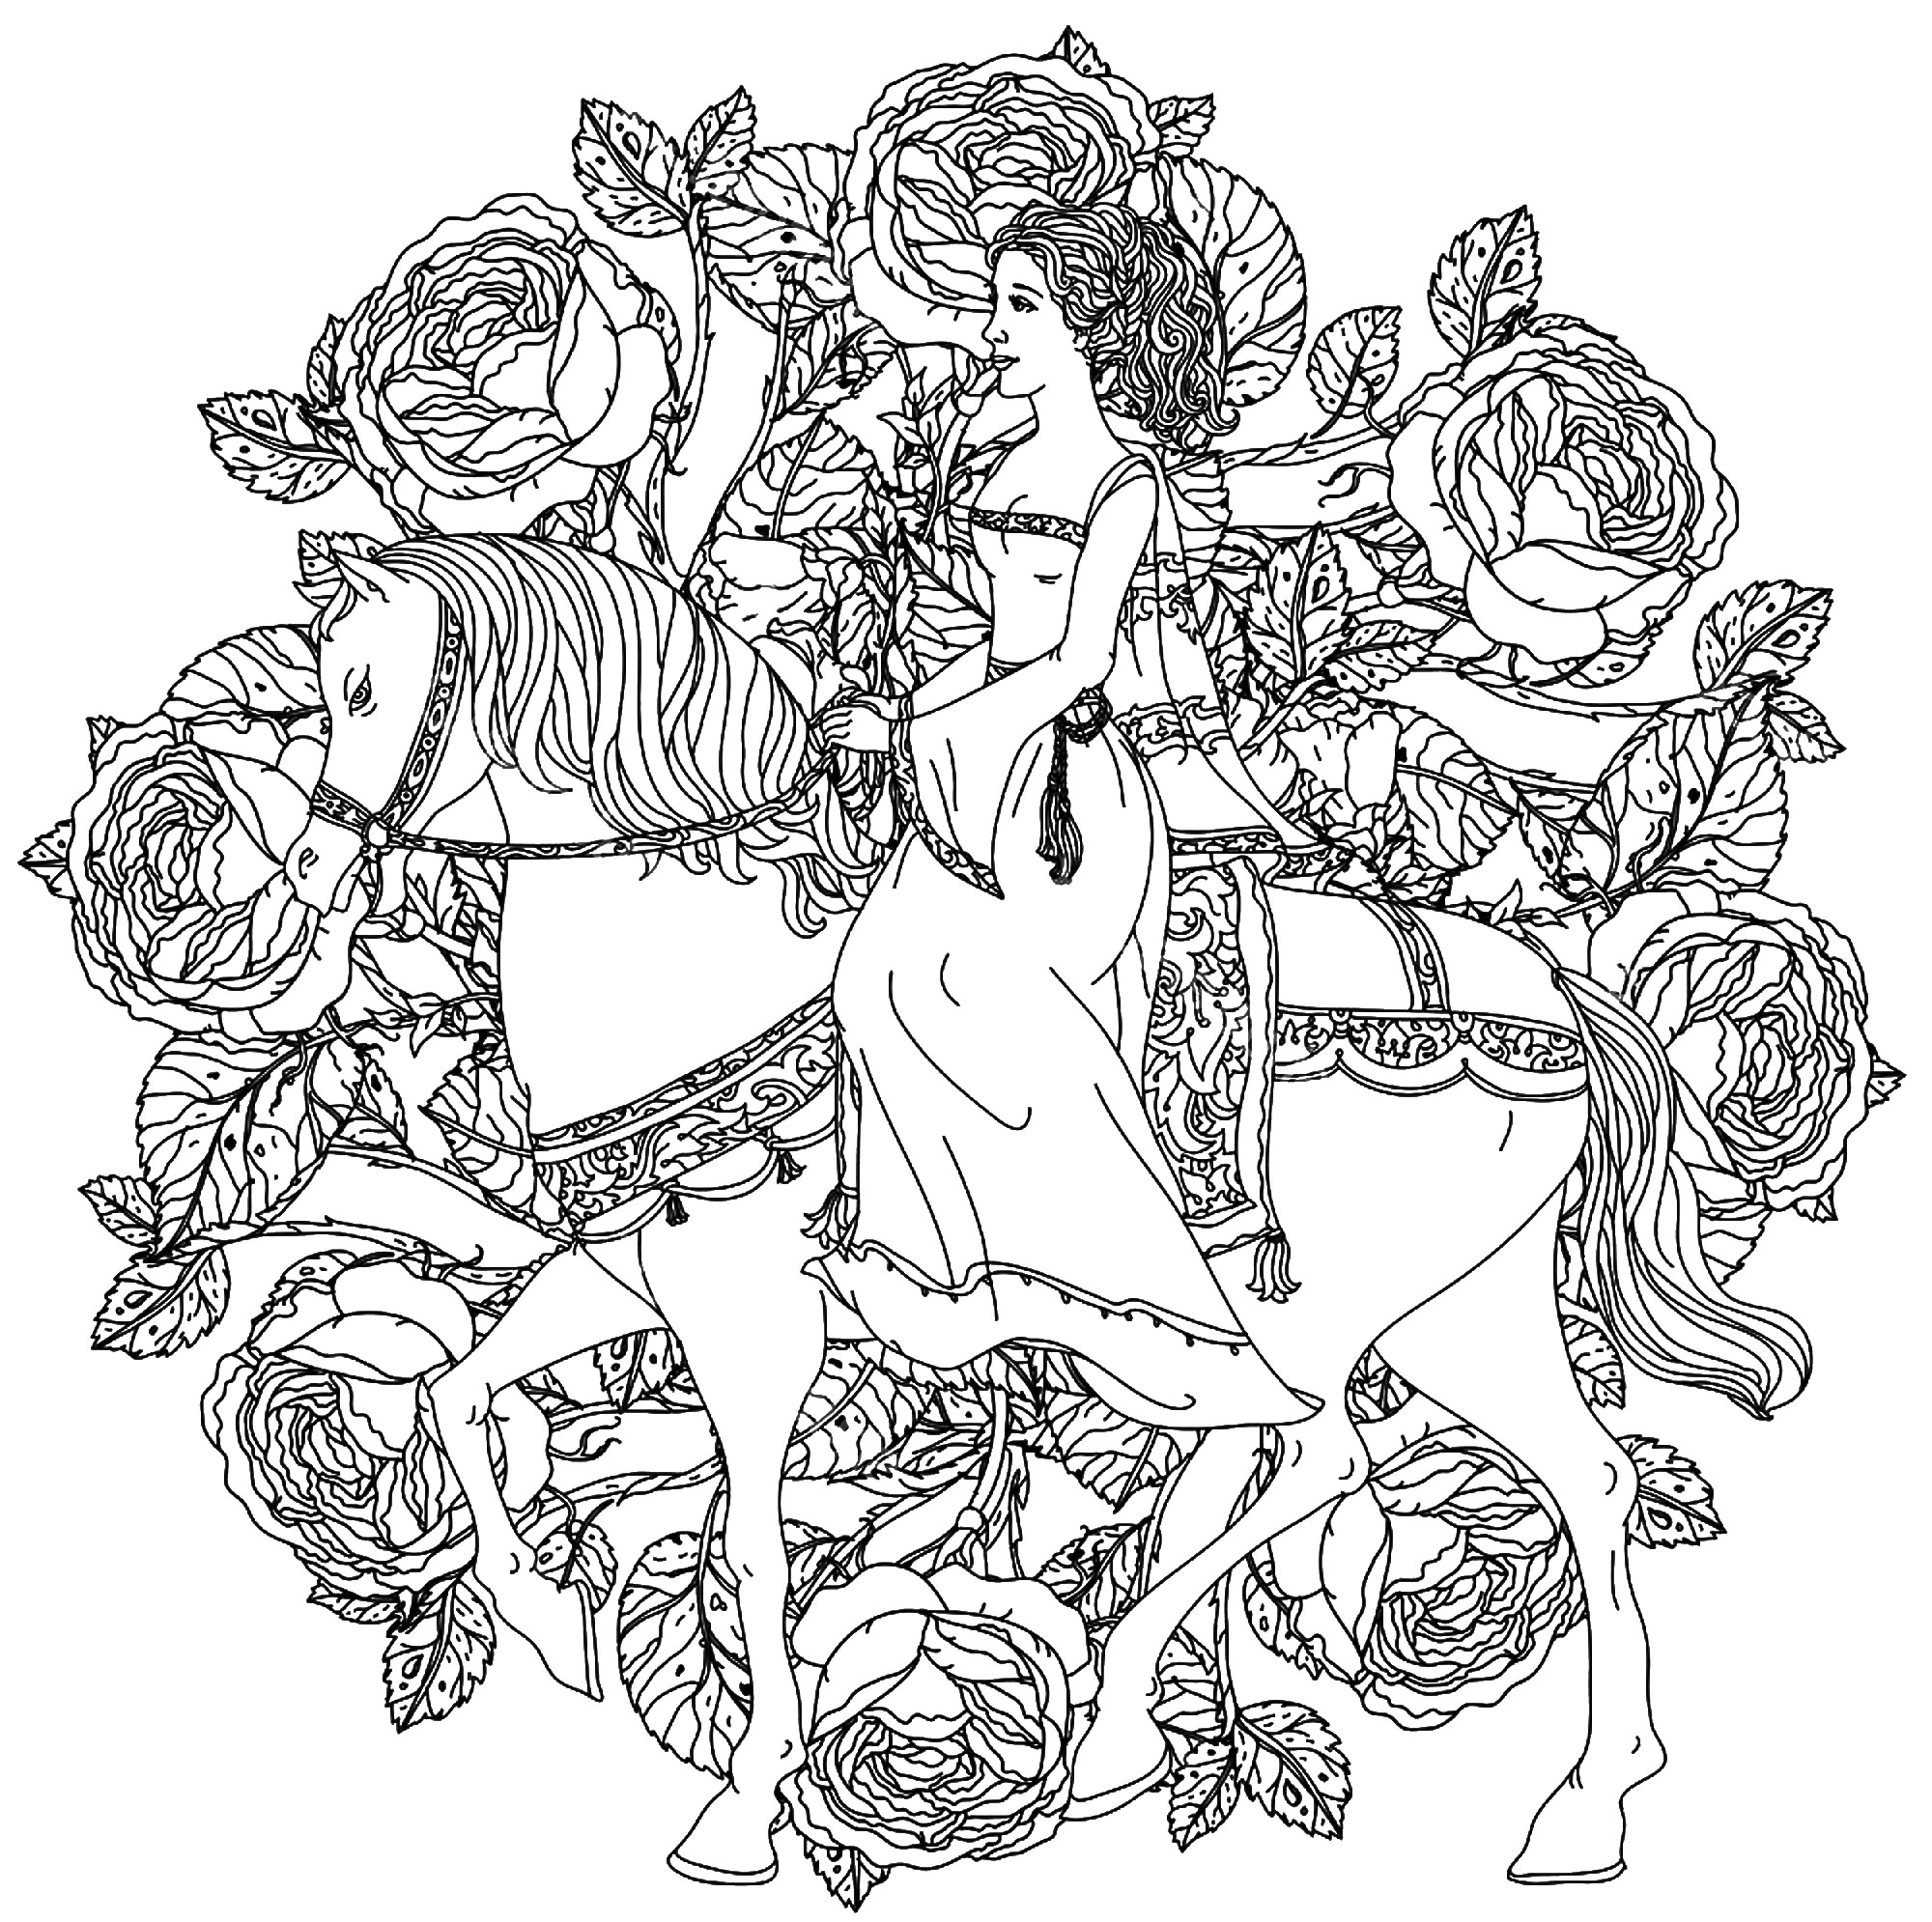 Una bella ed elegante principessa, in sella al suo cavallo bianco, al centro di un mandala composto da rose